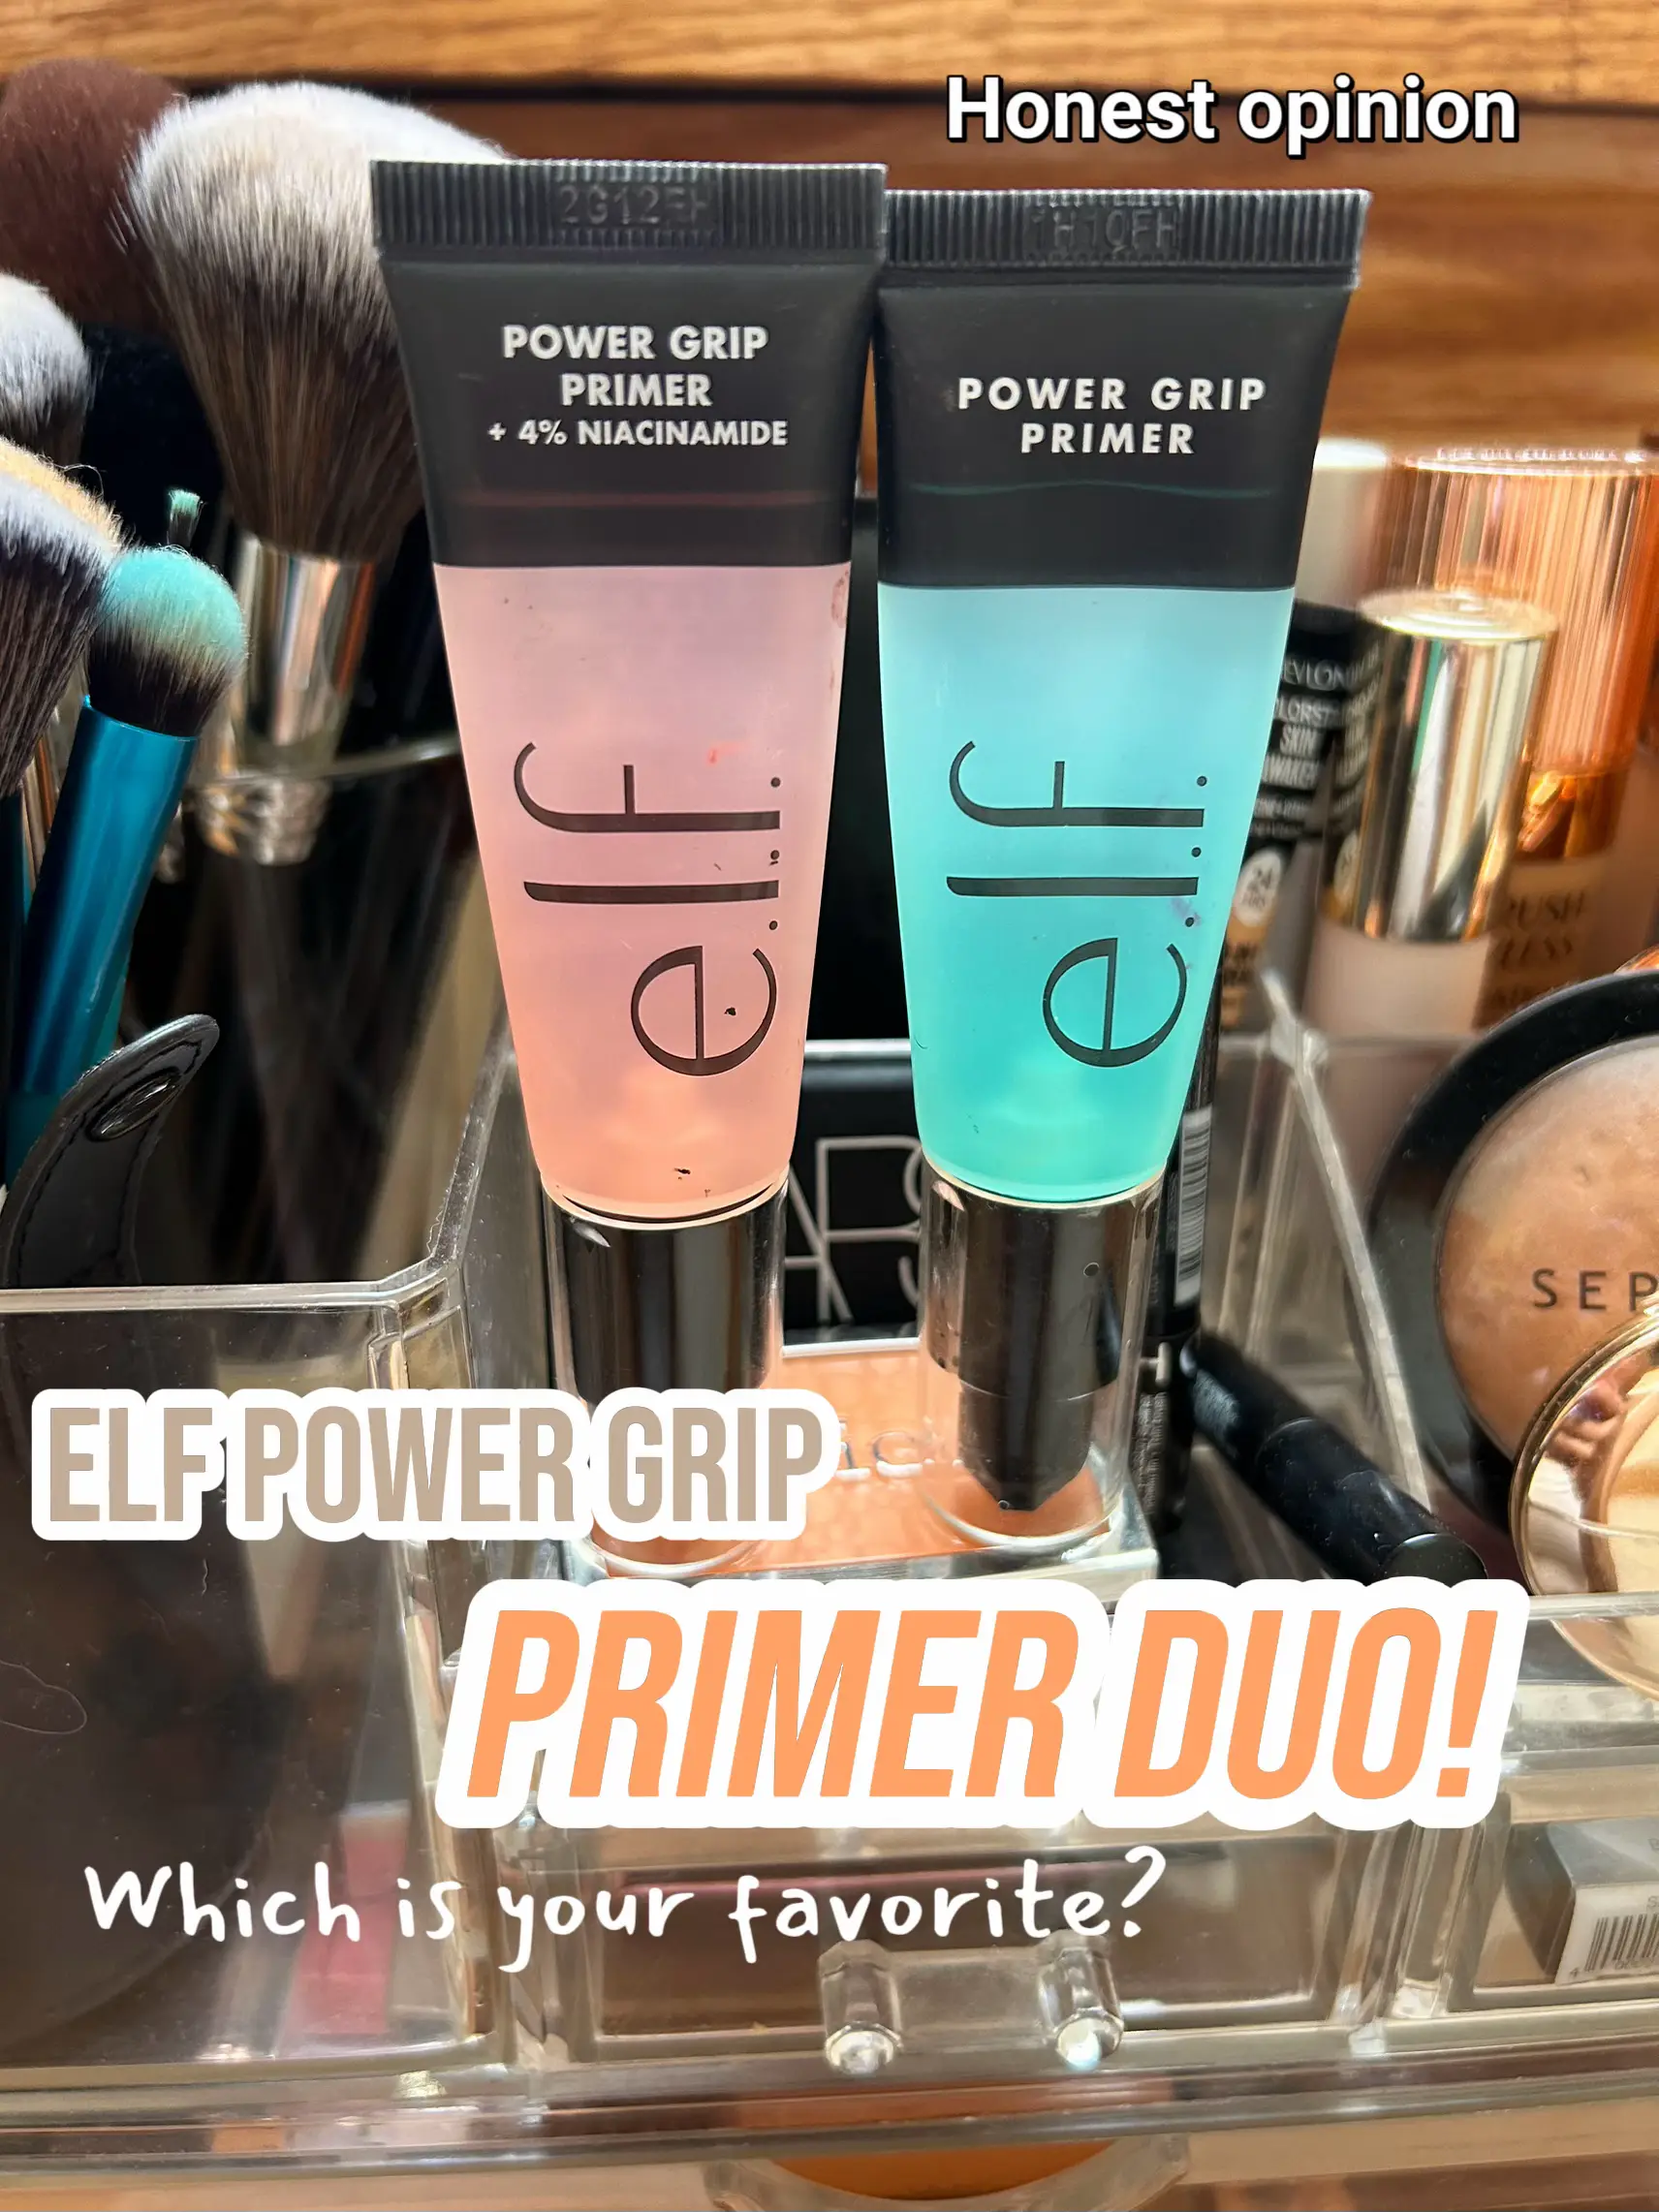 Elf Power Grip Primer Original VS 4% Niacinamide Version! Which do you